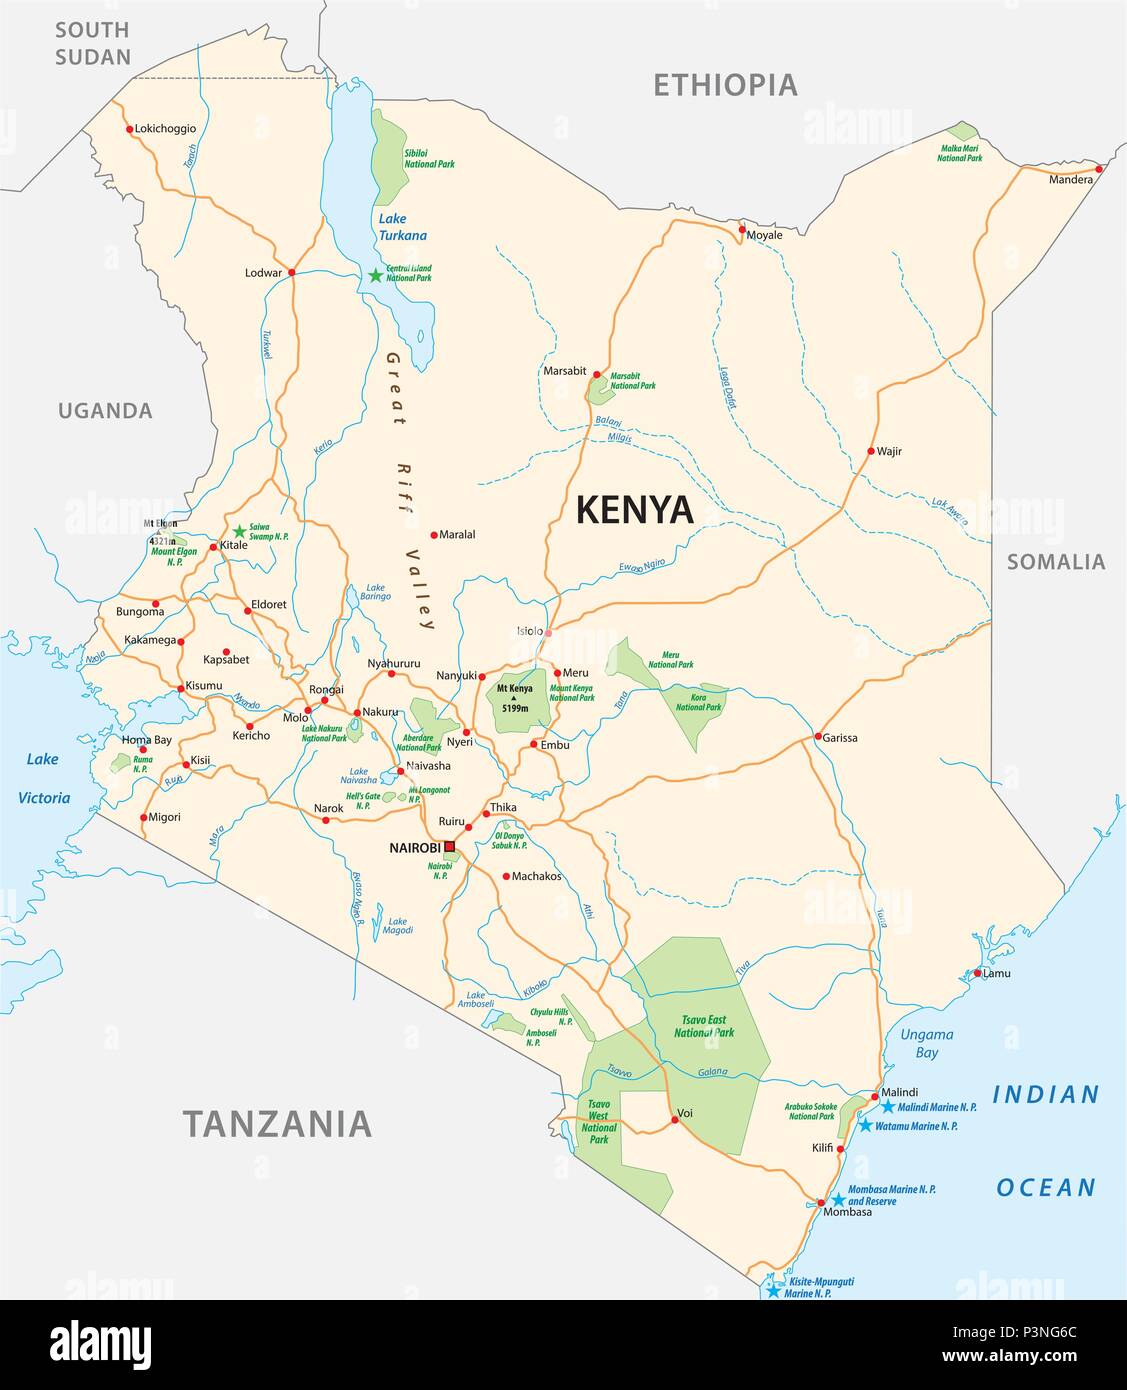 kenya road and national park vector map Stock Vector